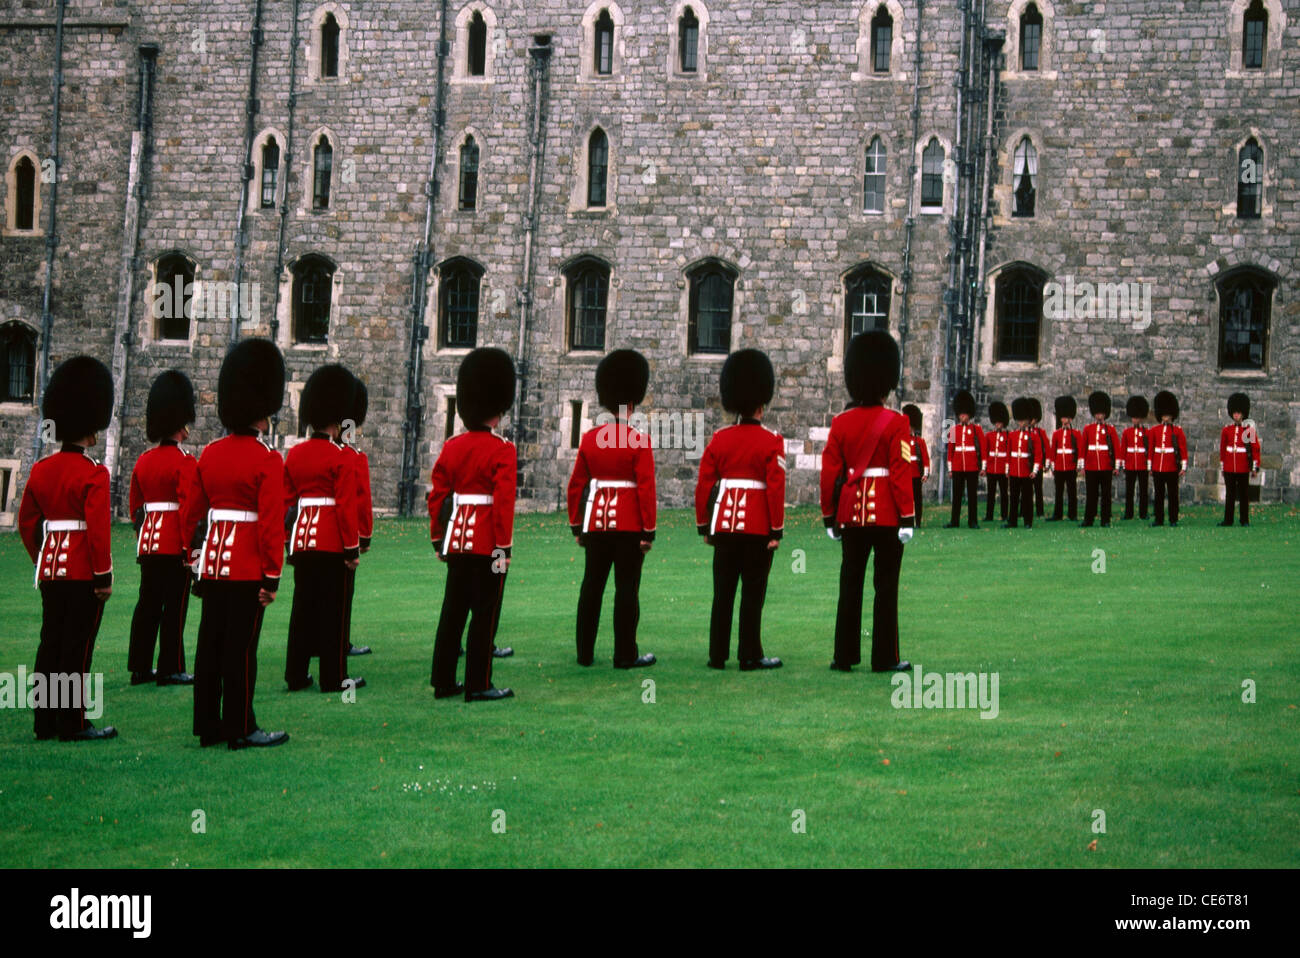 Cérémonie de la relève de la garde au château de Windsor ; Berkshire ; Royaume-Uni ; Angleterre ; Royaume-Uni Banque D'Images